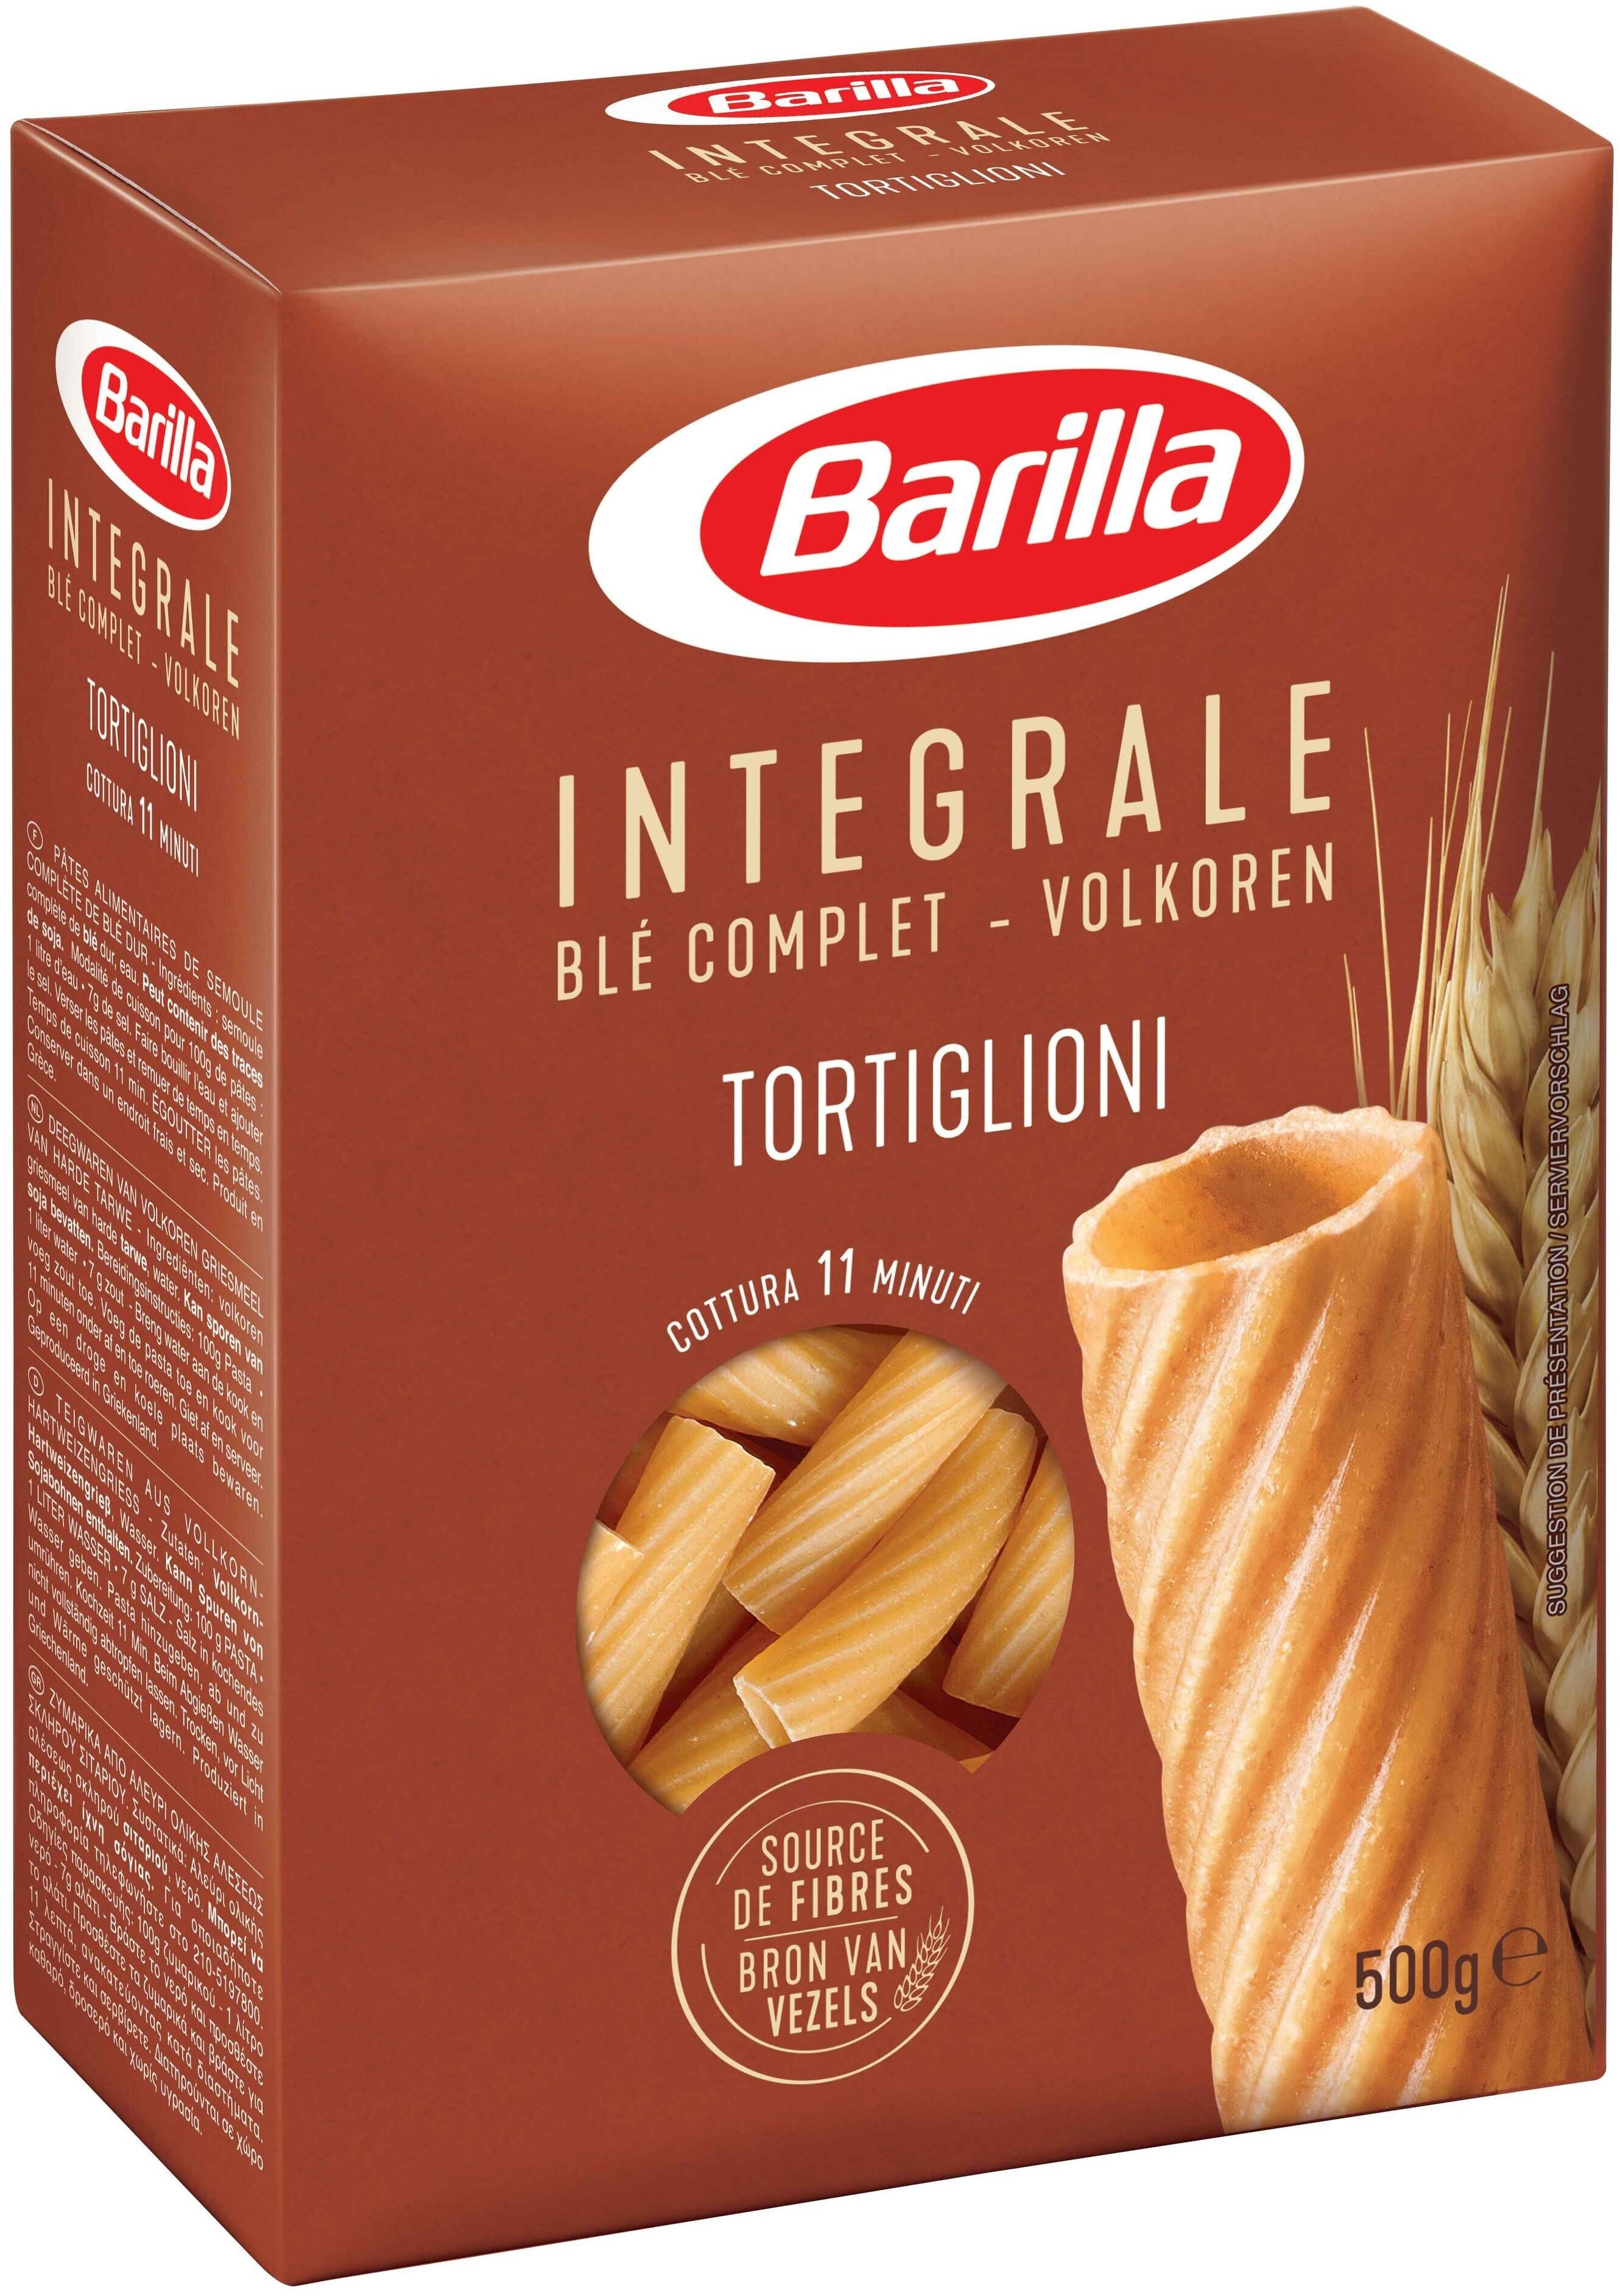 Barilla pates integrale tortiglioni au ble complet 500g - Instruction de recyclage et/ou informations d'emballage